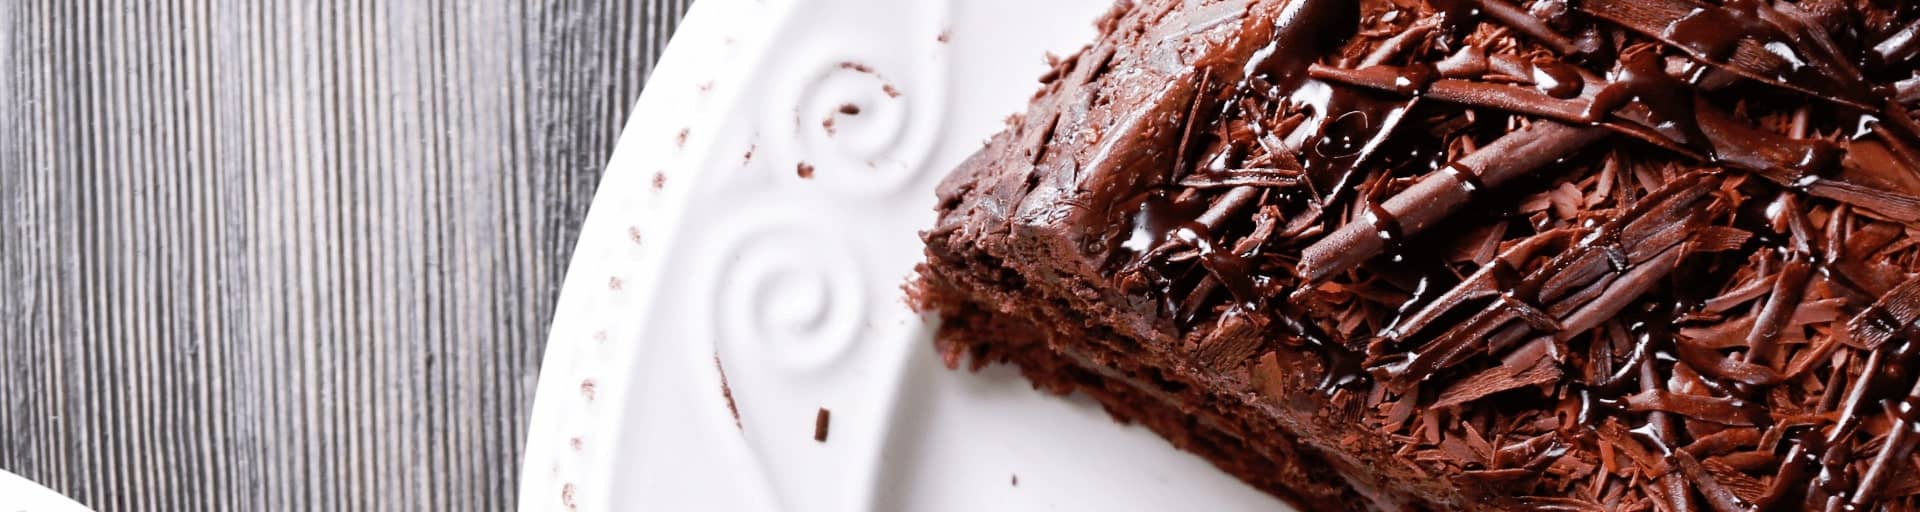 Шоколадный торт - рецепты с фото и видео на malino-v.ru